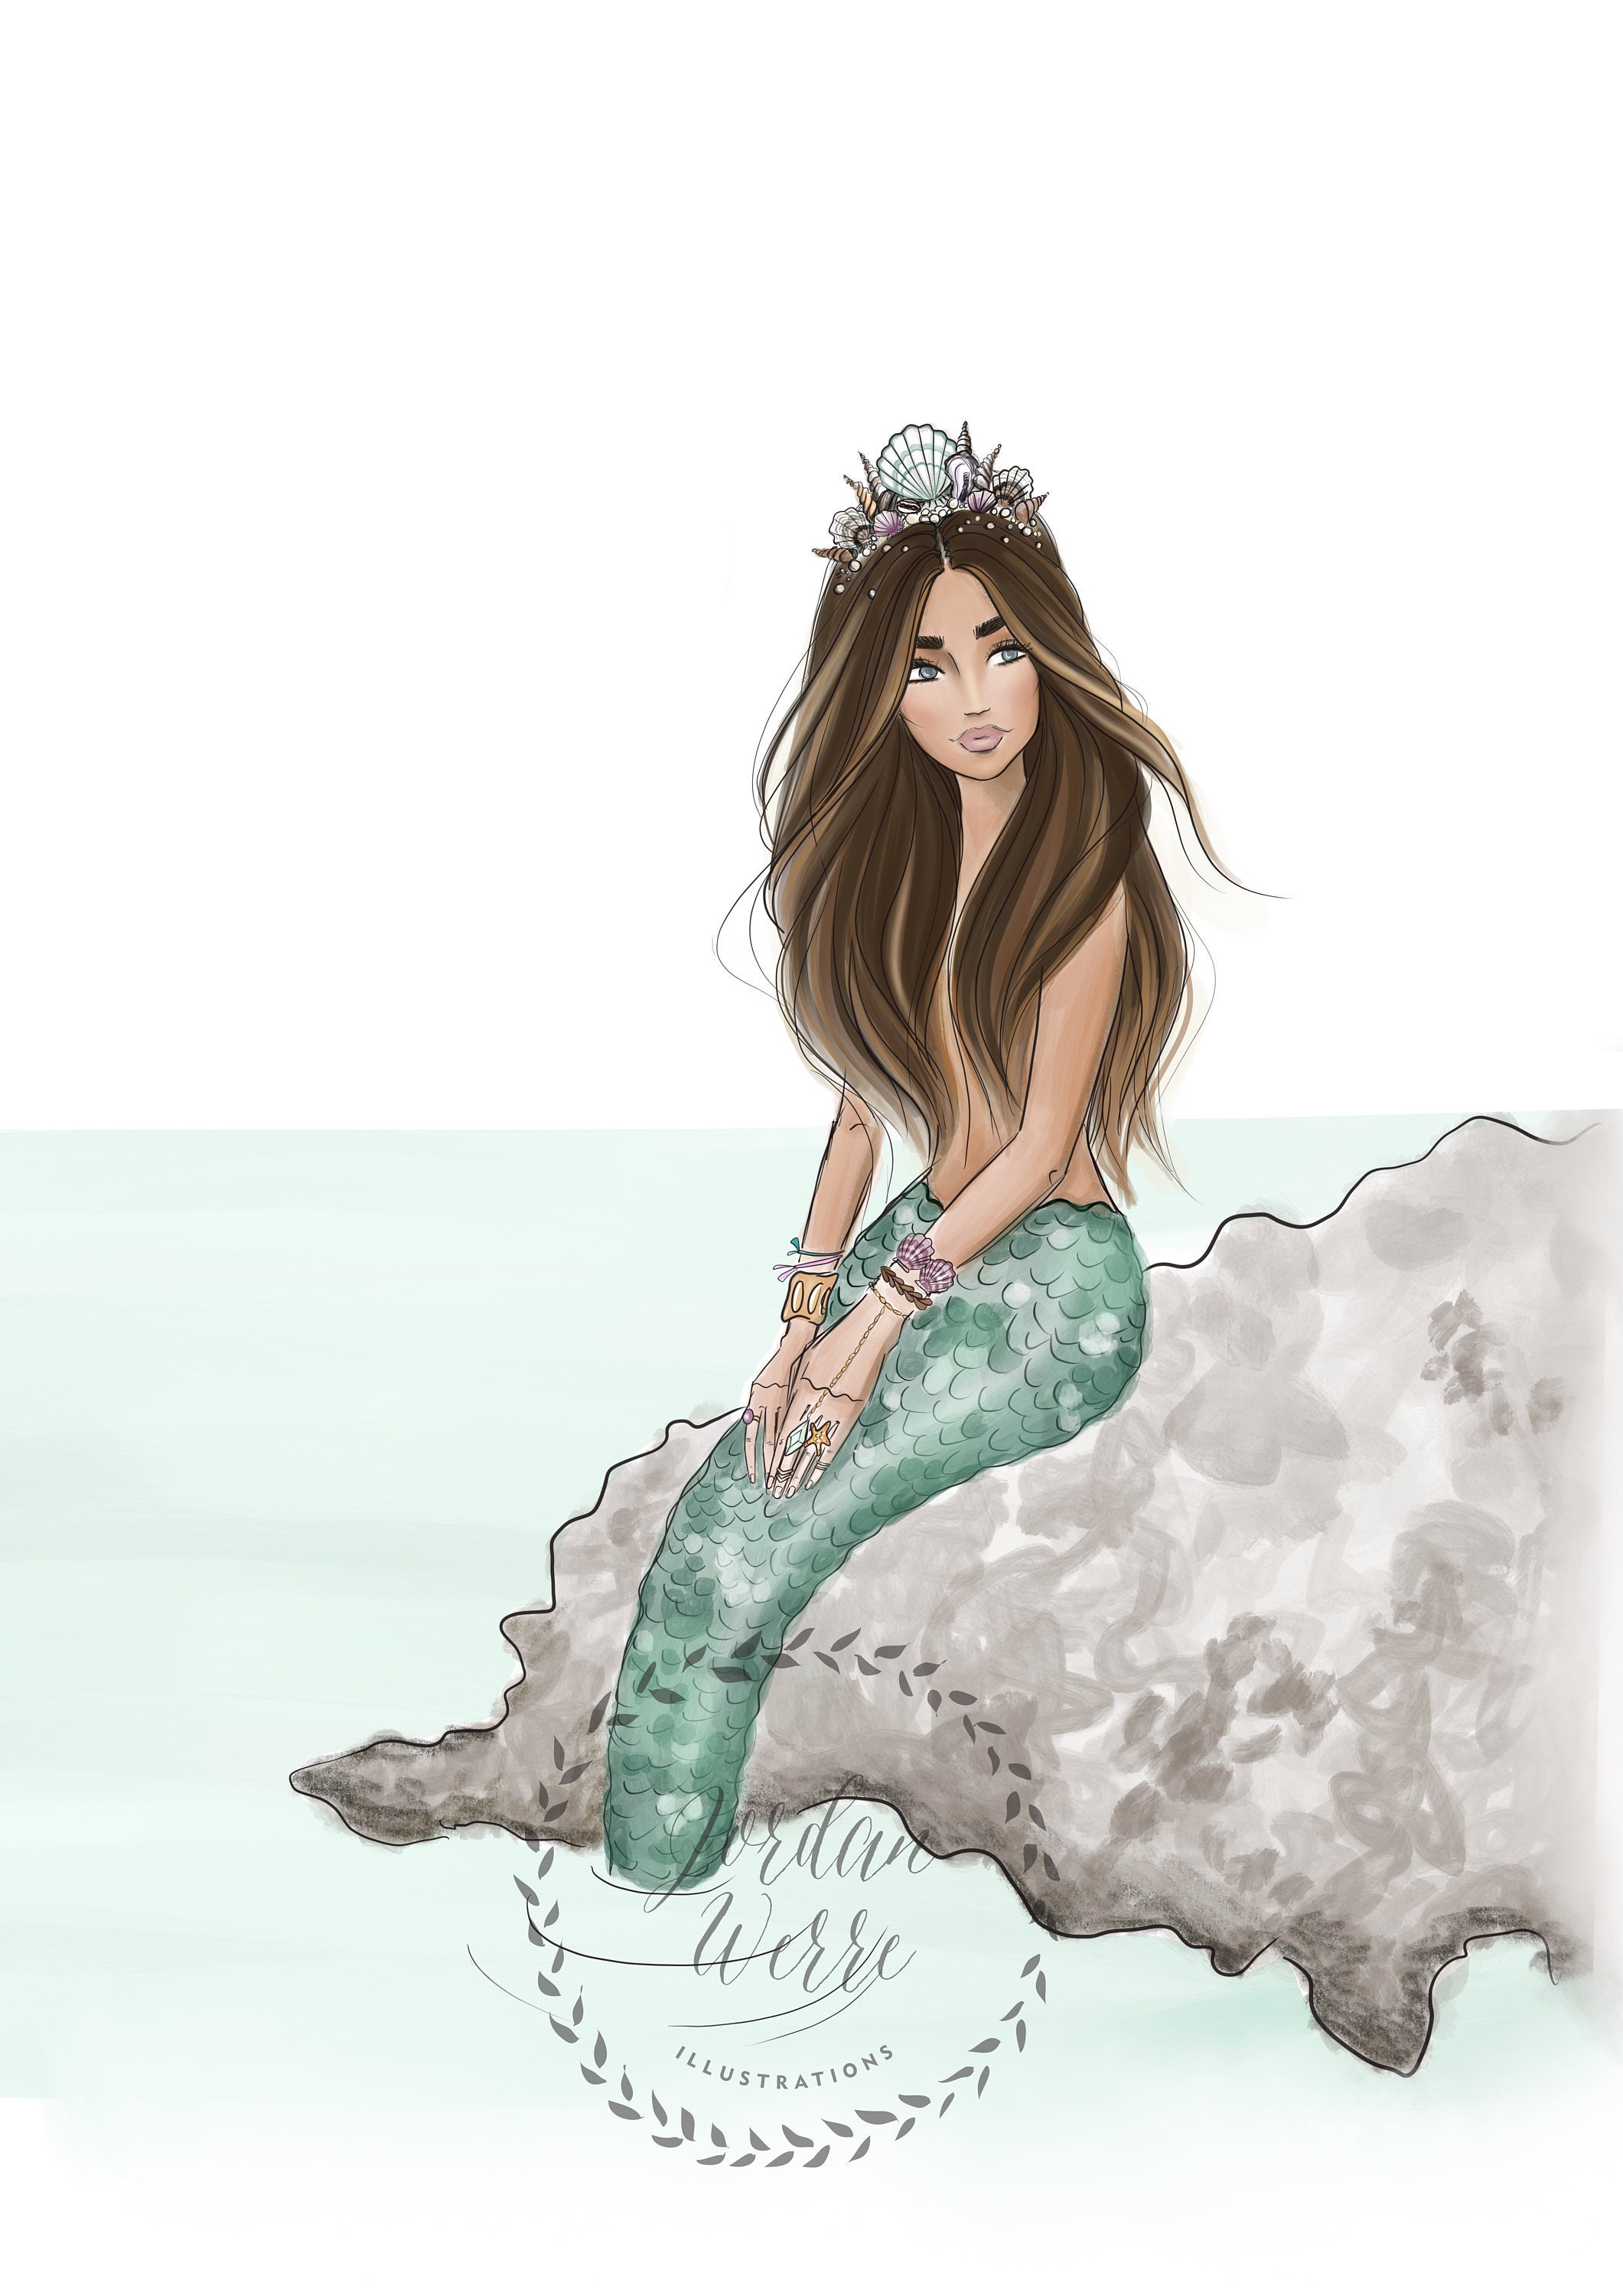 Corona de sirenas Arte de la Sirena Mermaid Art | Etsy